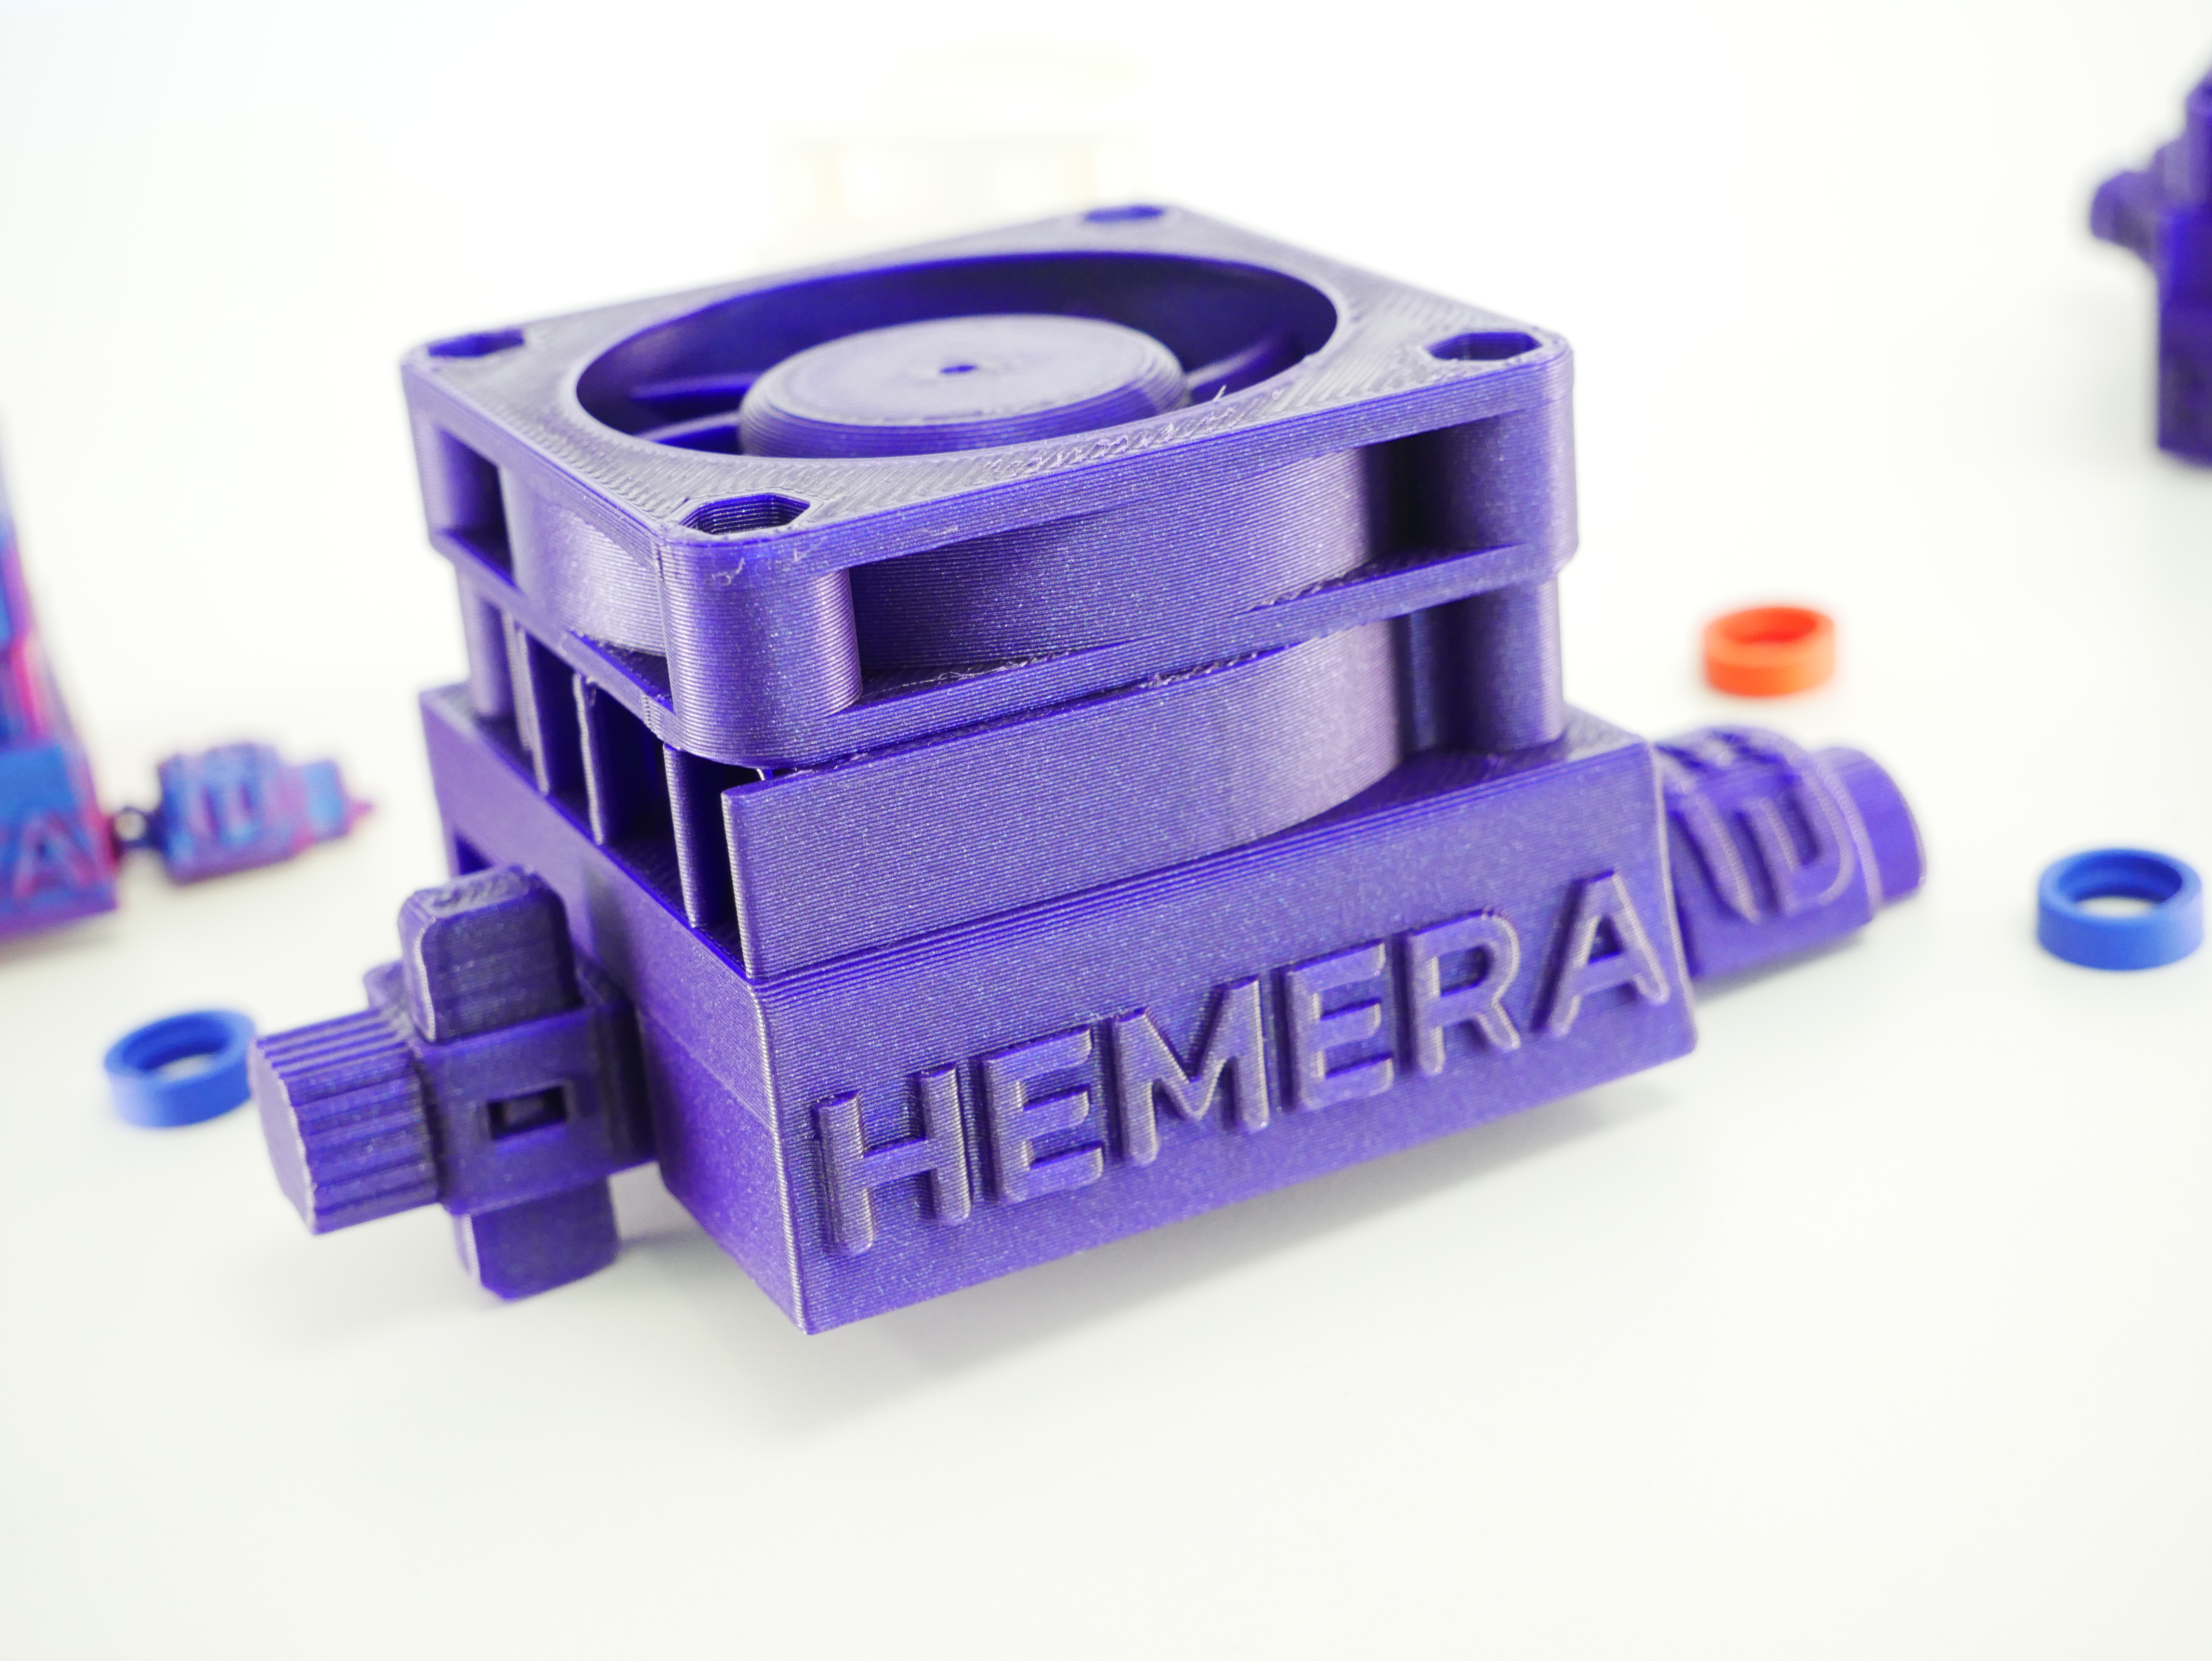 Hemera Spinner ~ A 3D Printer stress test